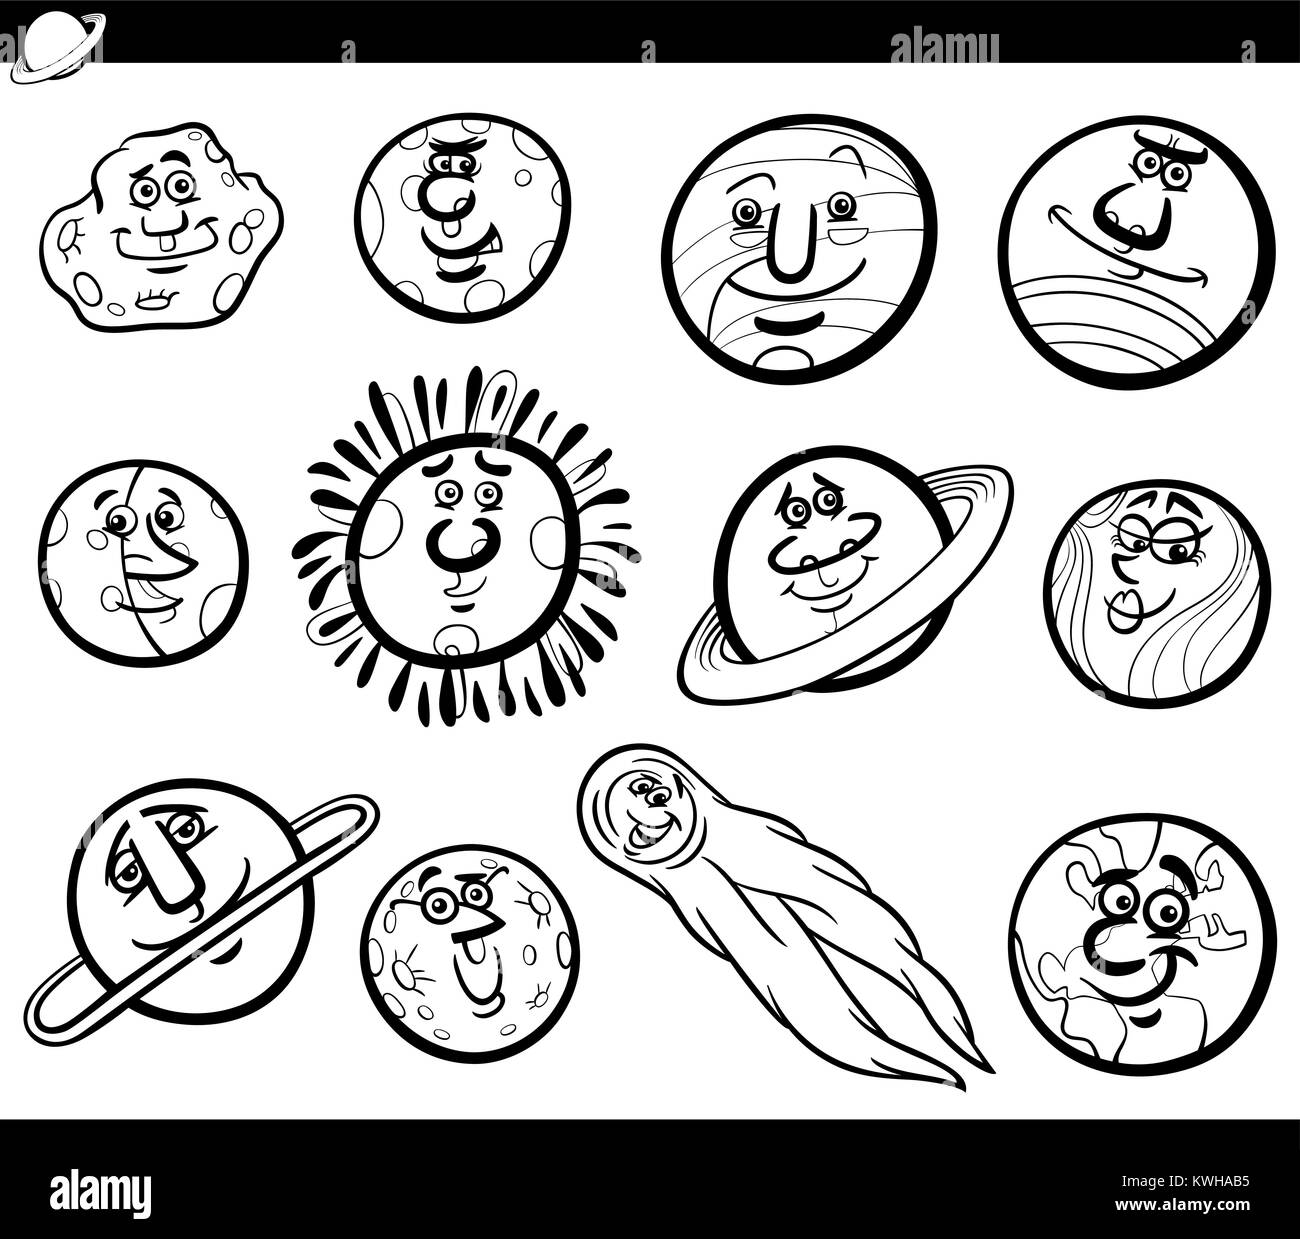 Cartoon noir et blanc Illustration d'Orbes drôles et les planètes du système solaire de personnages de bande dessinée Espace Coloring Book Illustration de Vecteur